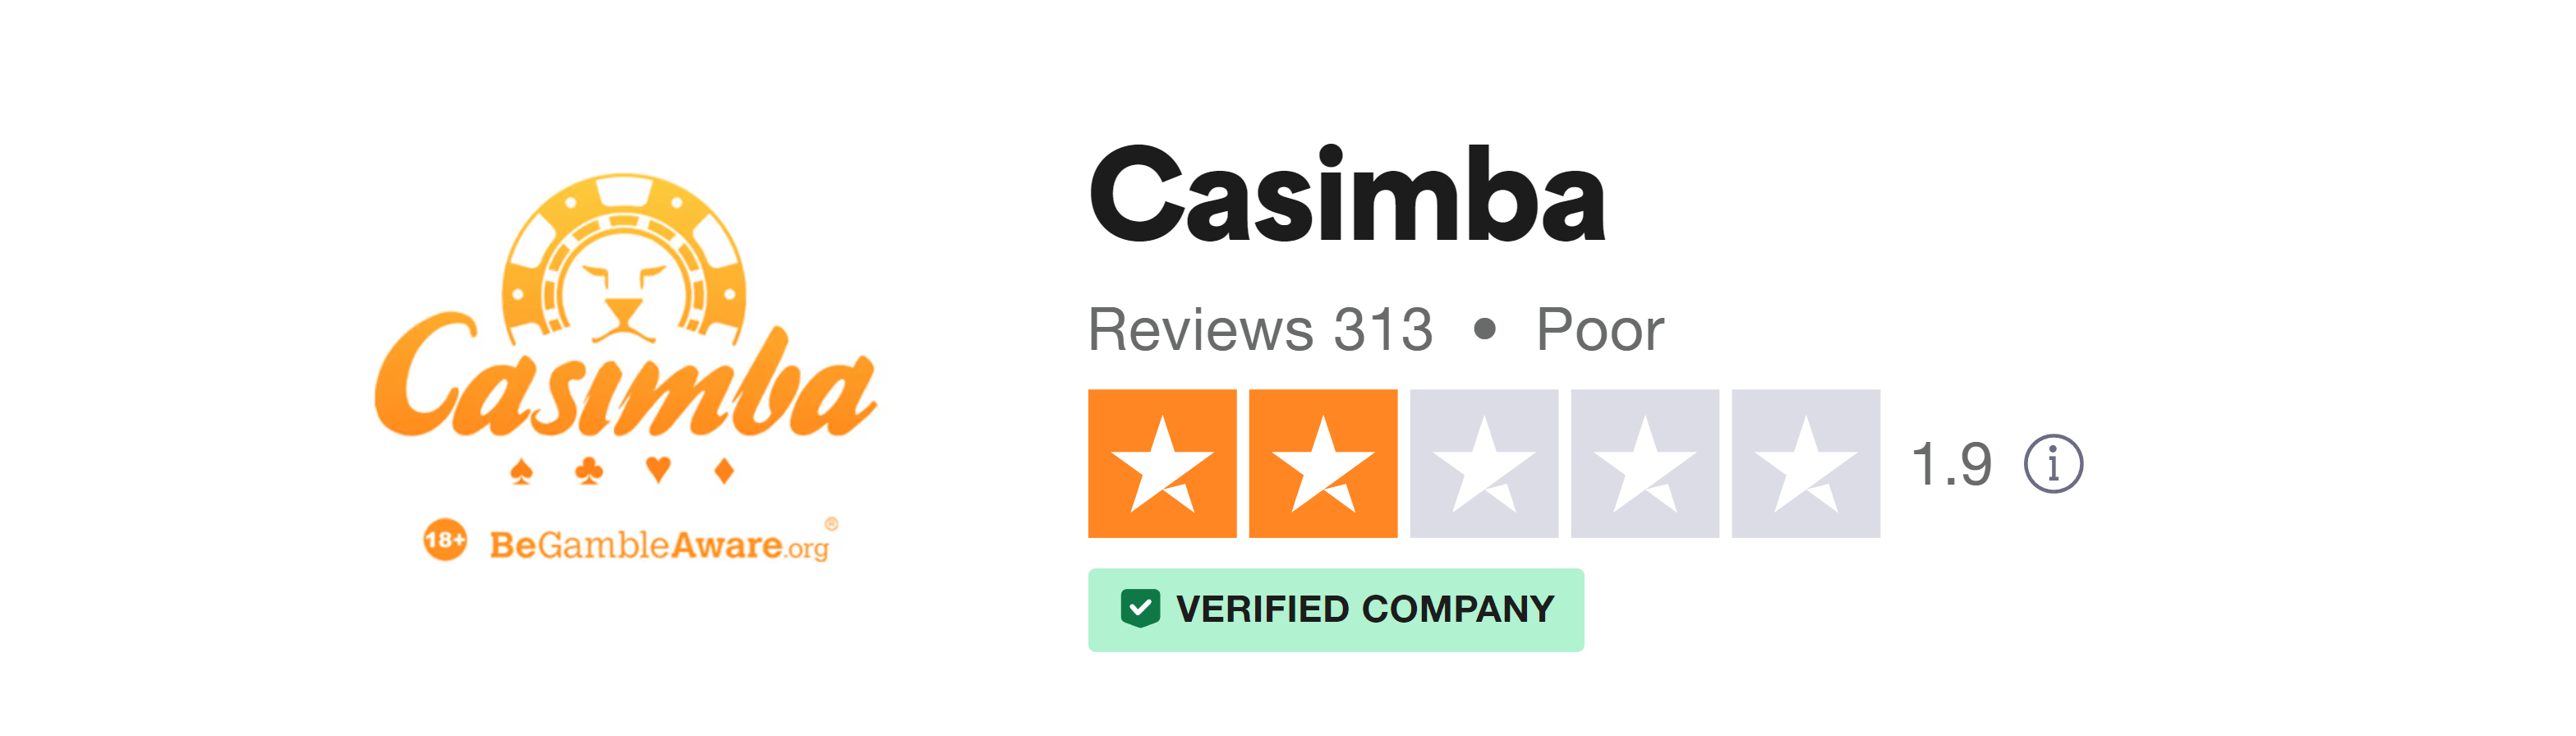 Trustpilot rating screenshot for the Casimba